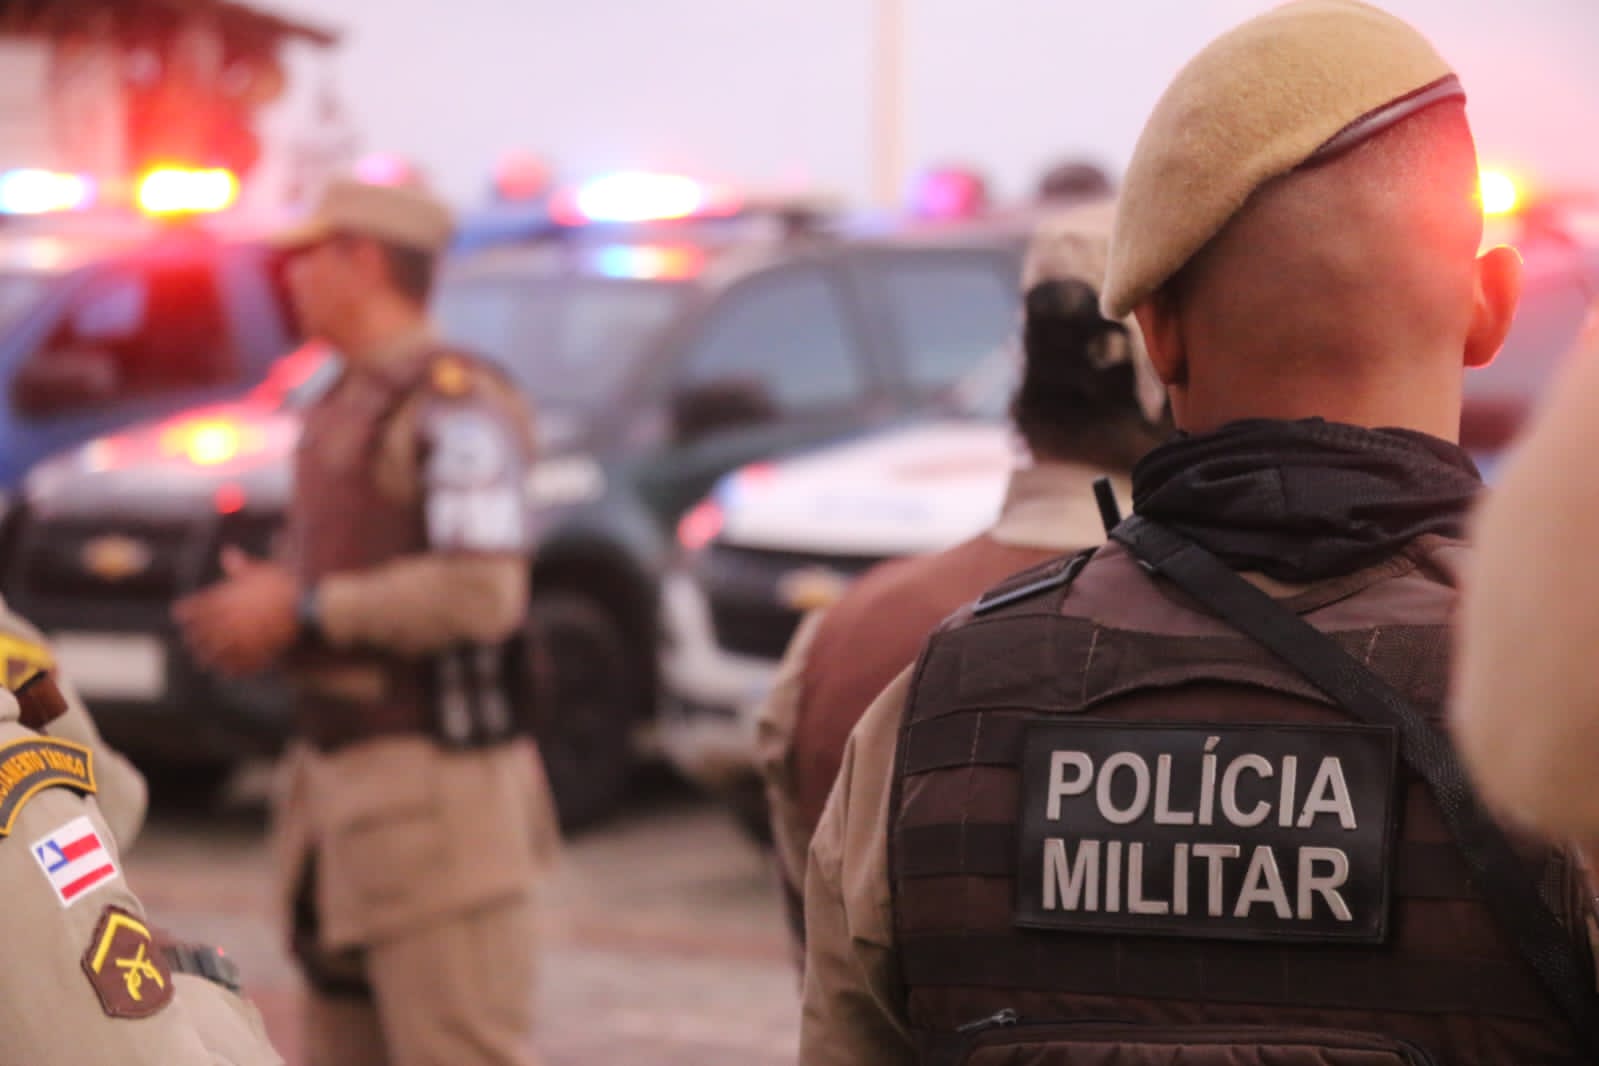 Polícia reforça patrulhamento e analisa imagens de câmeras após incêndio a ônibus em Salvador